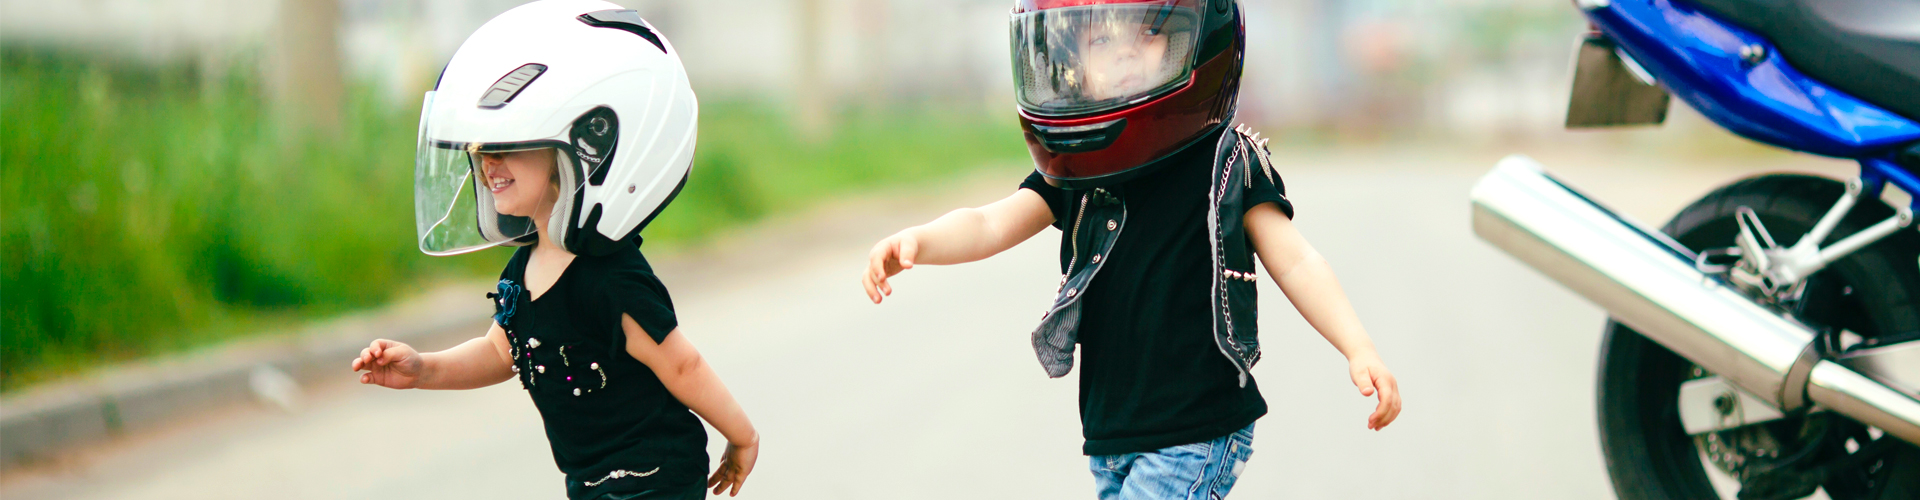 Gant bering enfant 10 ans - Équipement moto